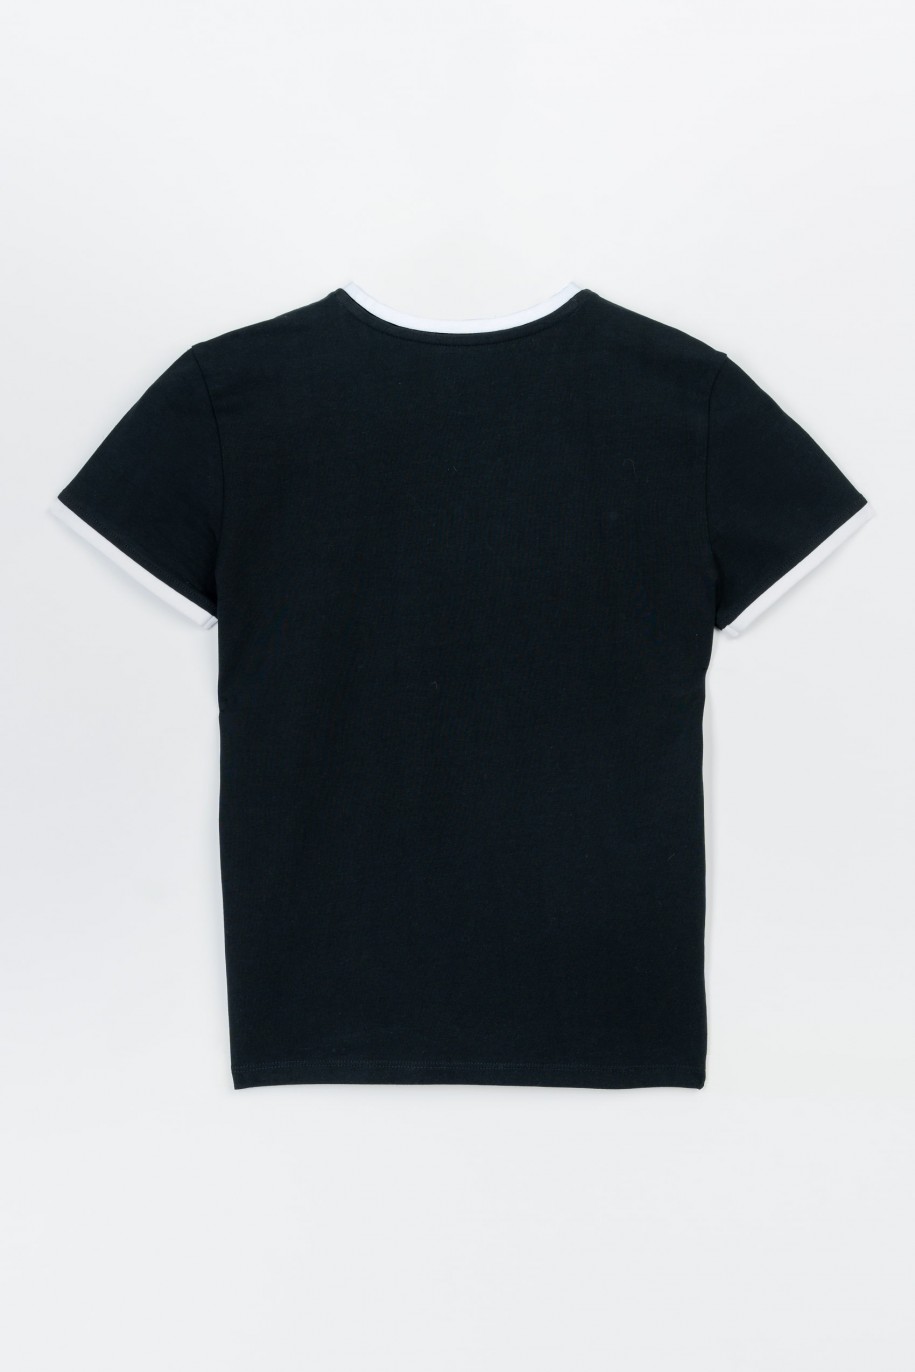 Czarny t-shirt z białą lamówką i wypukłym nadrukiem na wysokości piersi - 47475